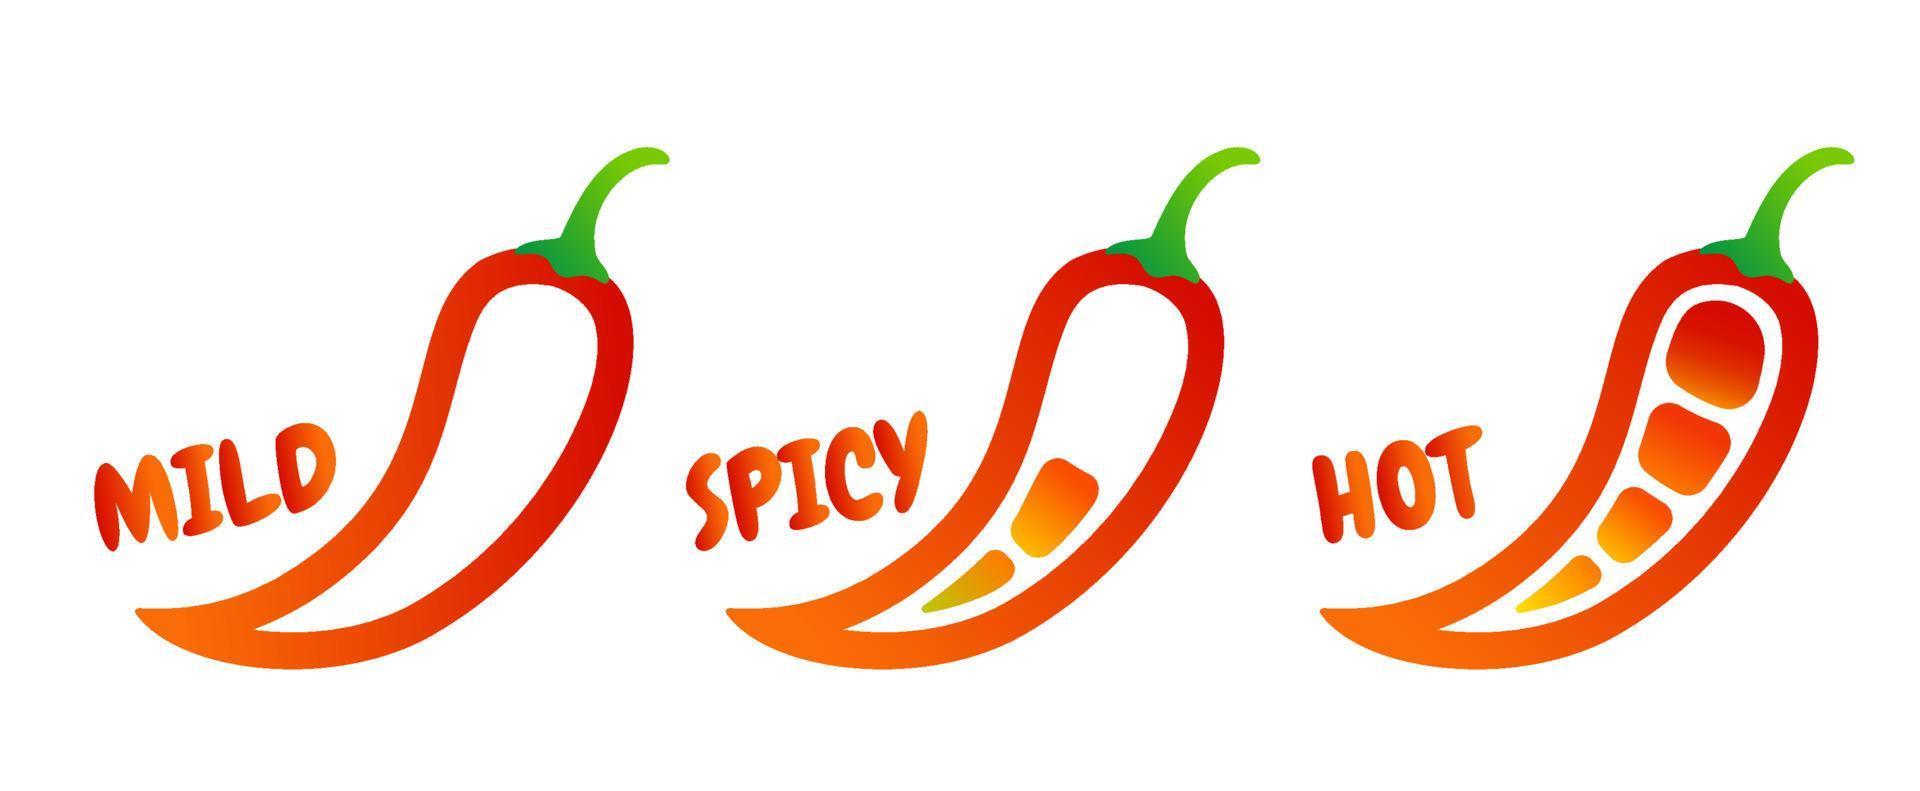 ilustração em vetor de pimenta malagueta em diferentes níveis. vetor definido ícones de pimenta vermelha. molho de pimenta doce, médio e quente.